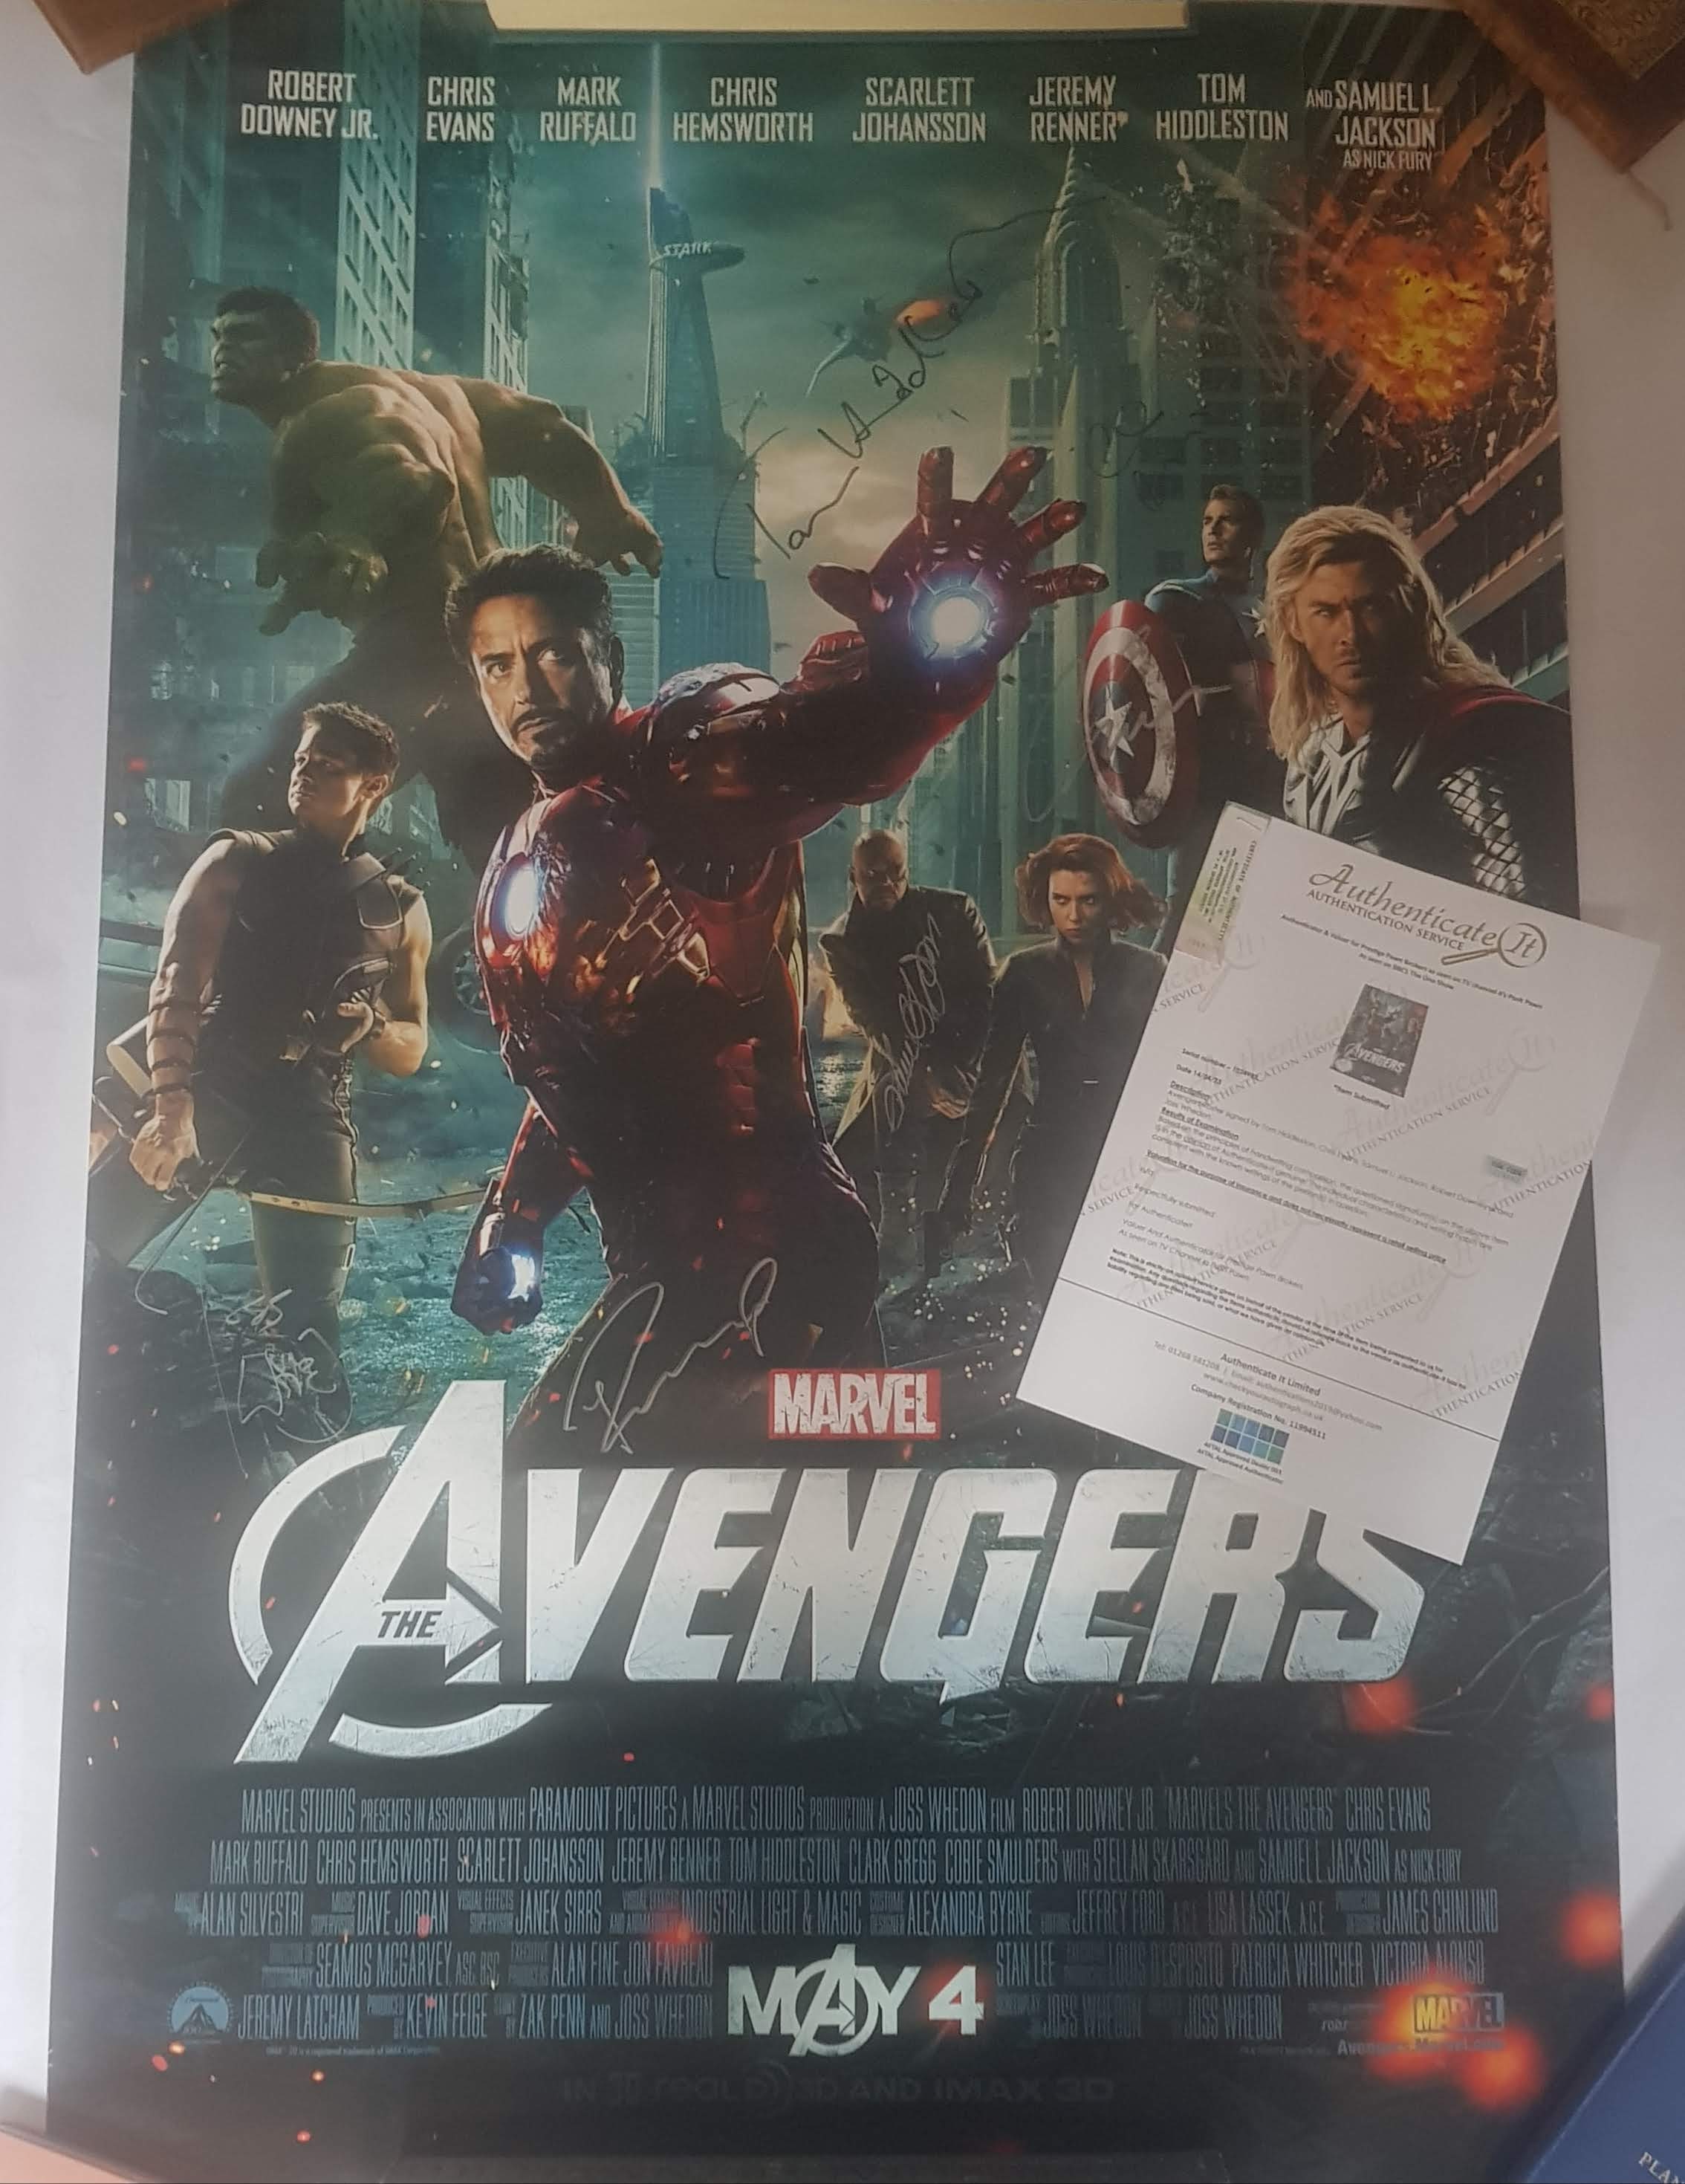 Avengers endgame cast signed poster 24 by 36 Chris Evans Robert